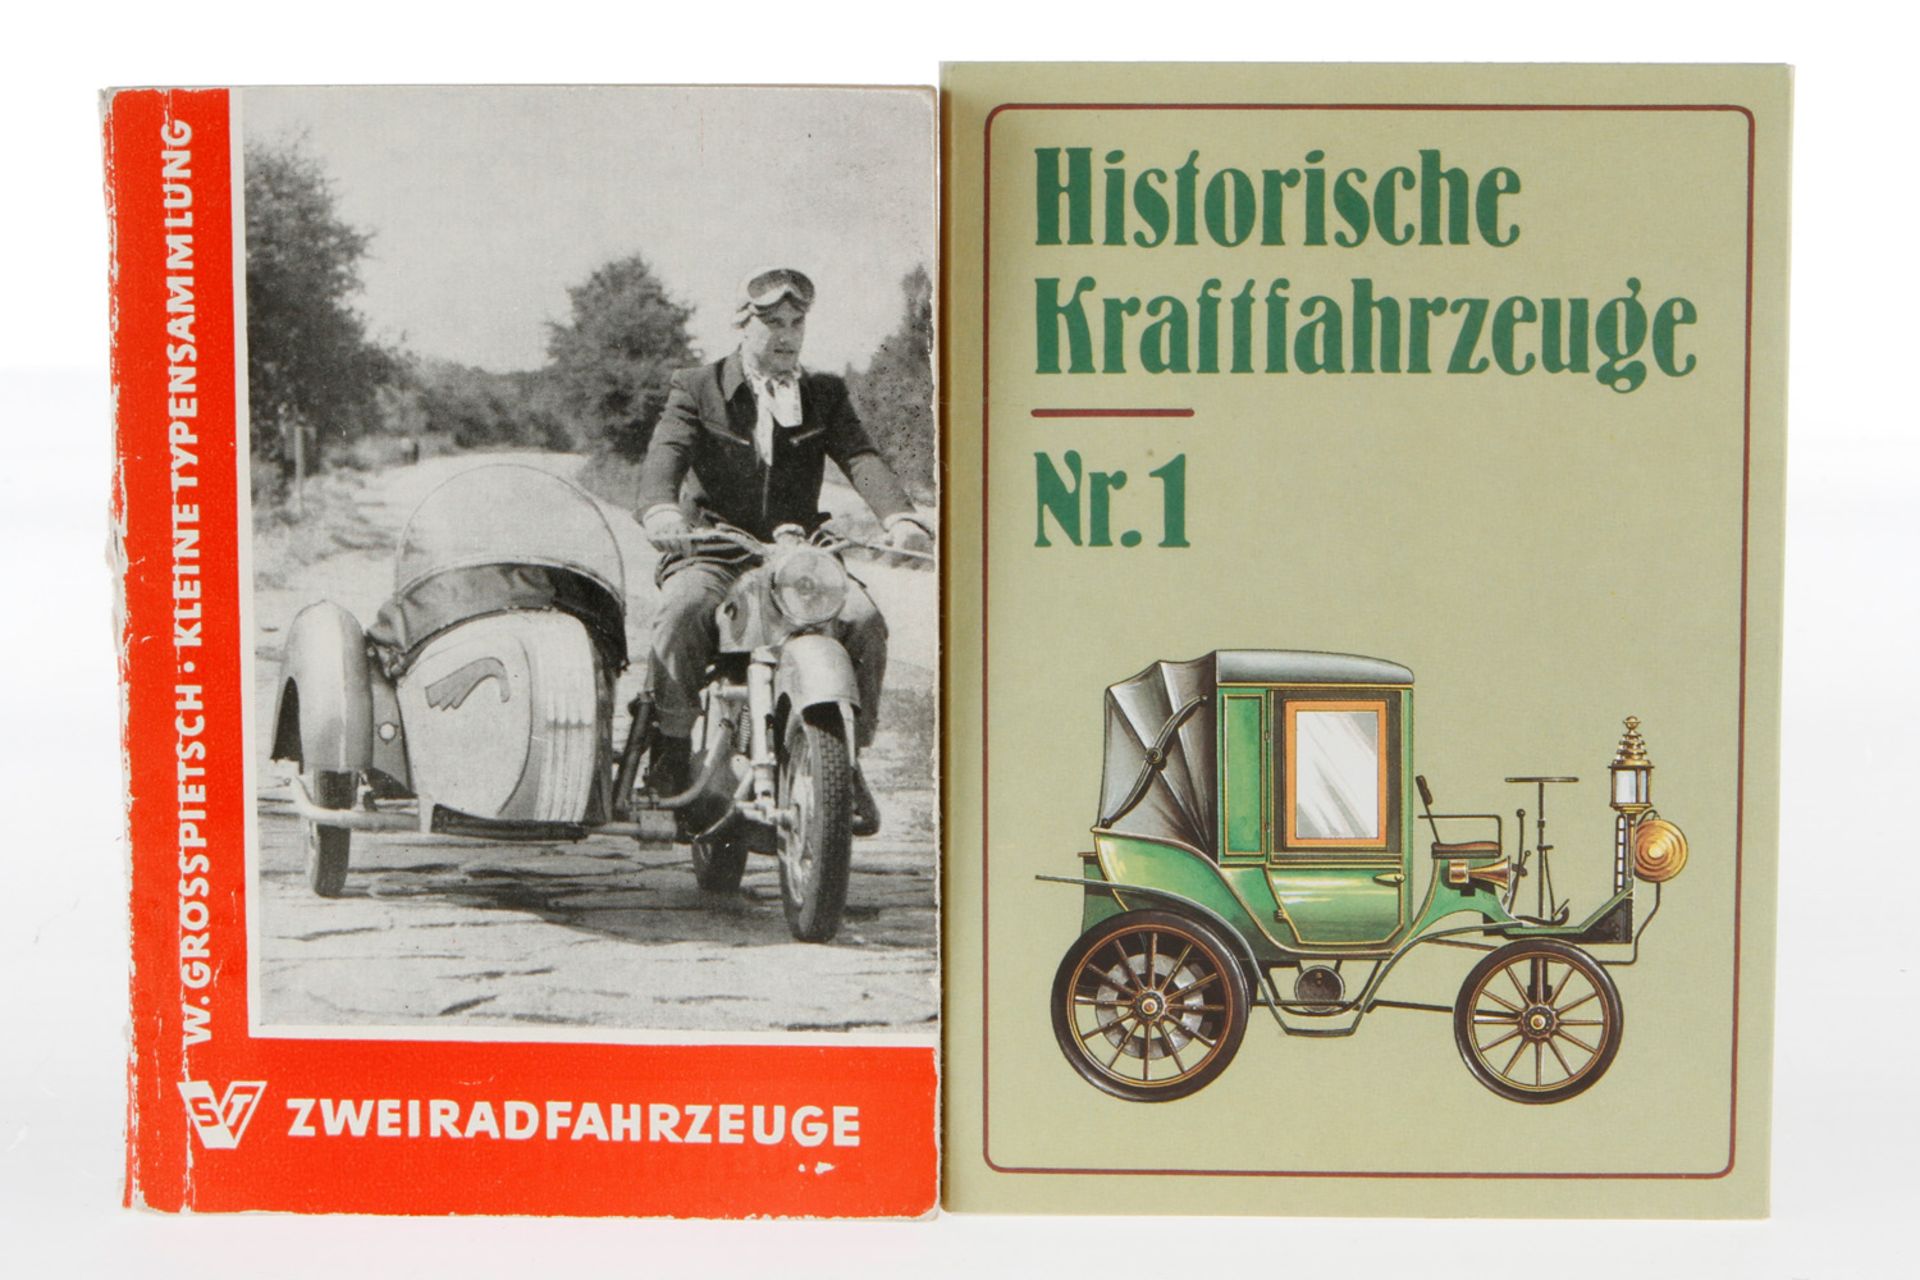 2 Hefte, 1 x "Historische Kraftfahrzeuge Nr. 1" mit 12 Karten in Sammelmappe Nr. 323, Planet-